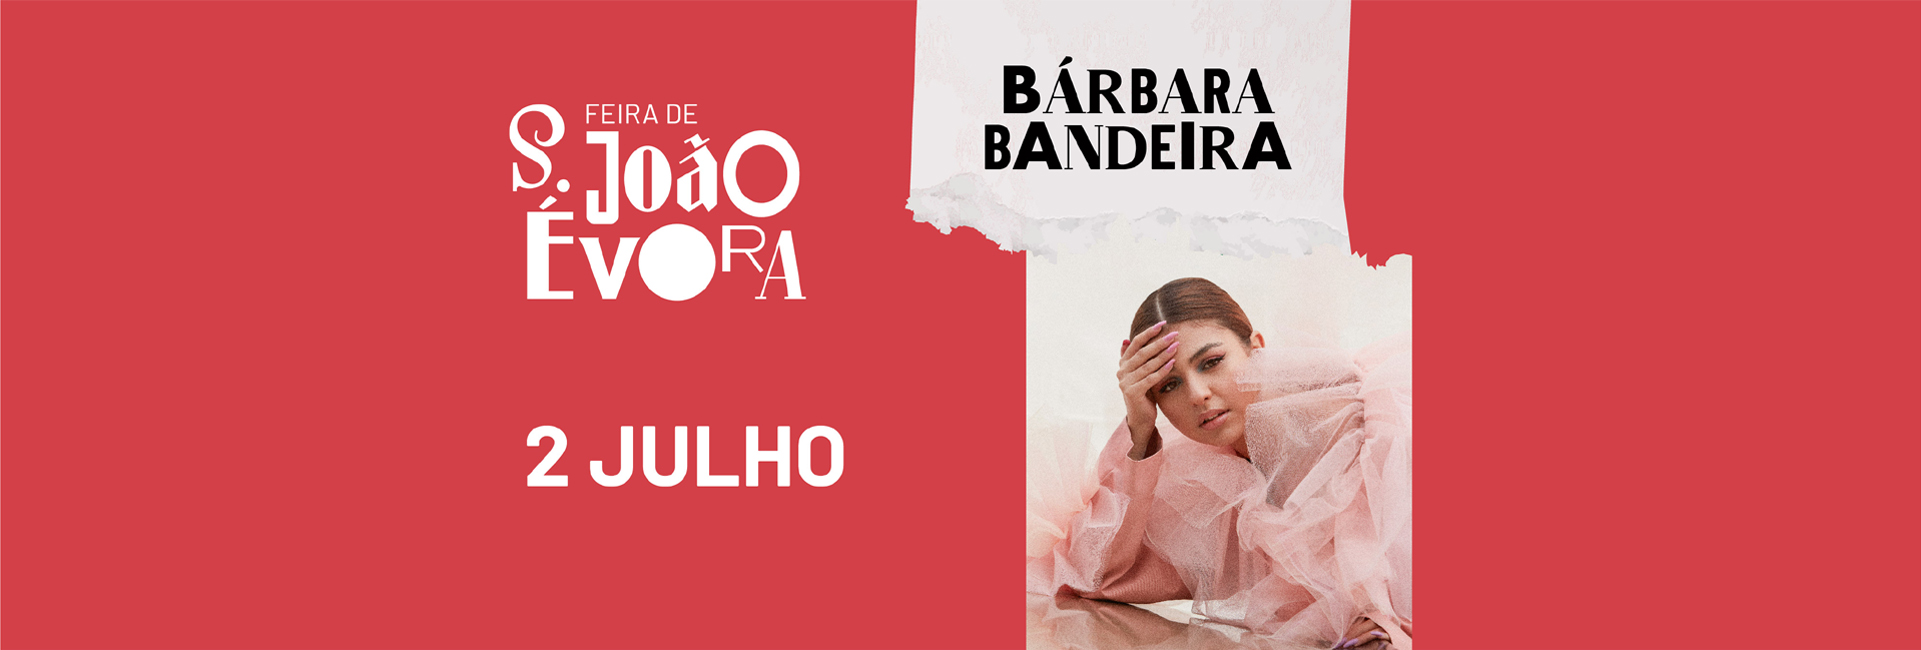 (Português) BÁRBARA BANDEIRA | Feira de S. João 2022